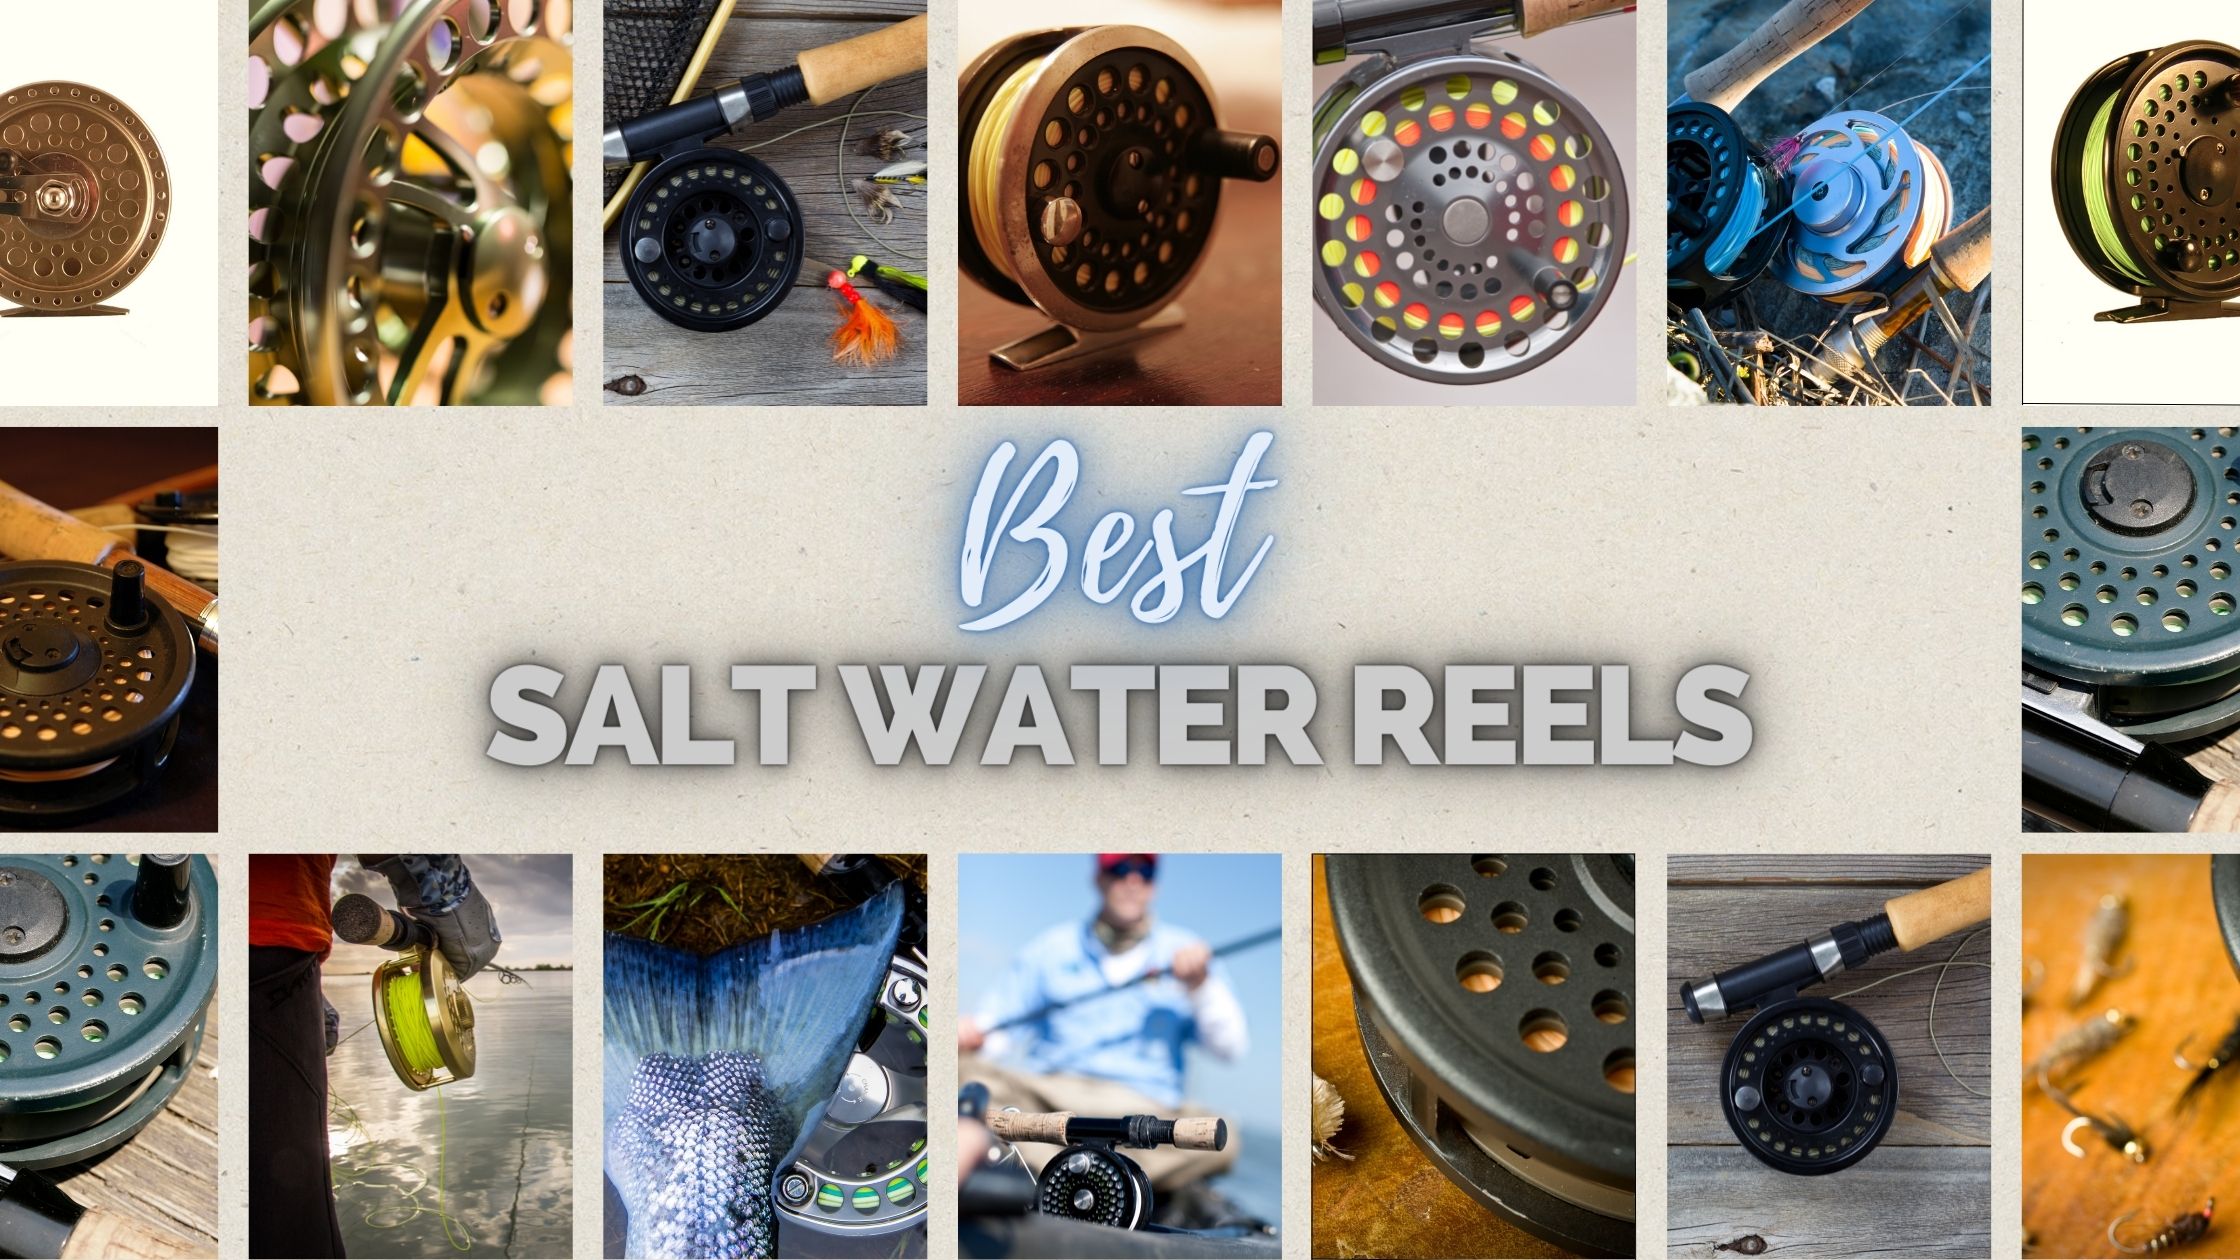 Best Saltwater Reels to buy in 2022